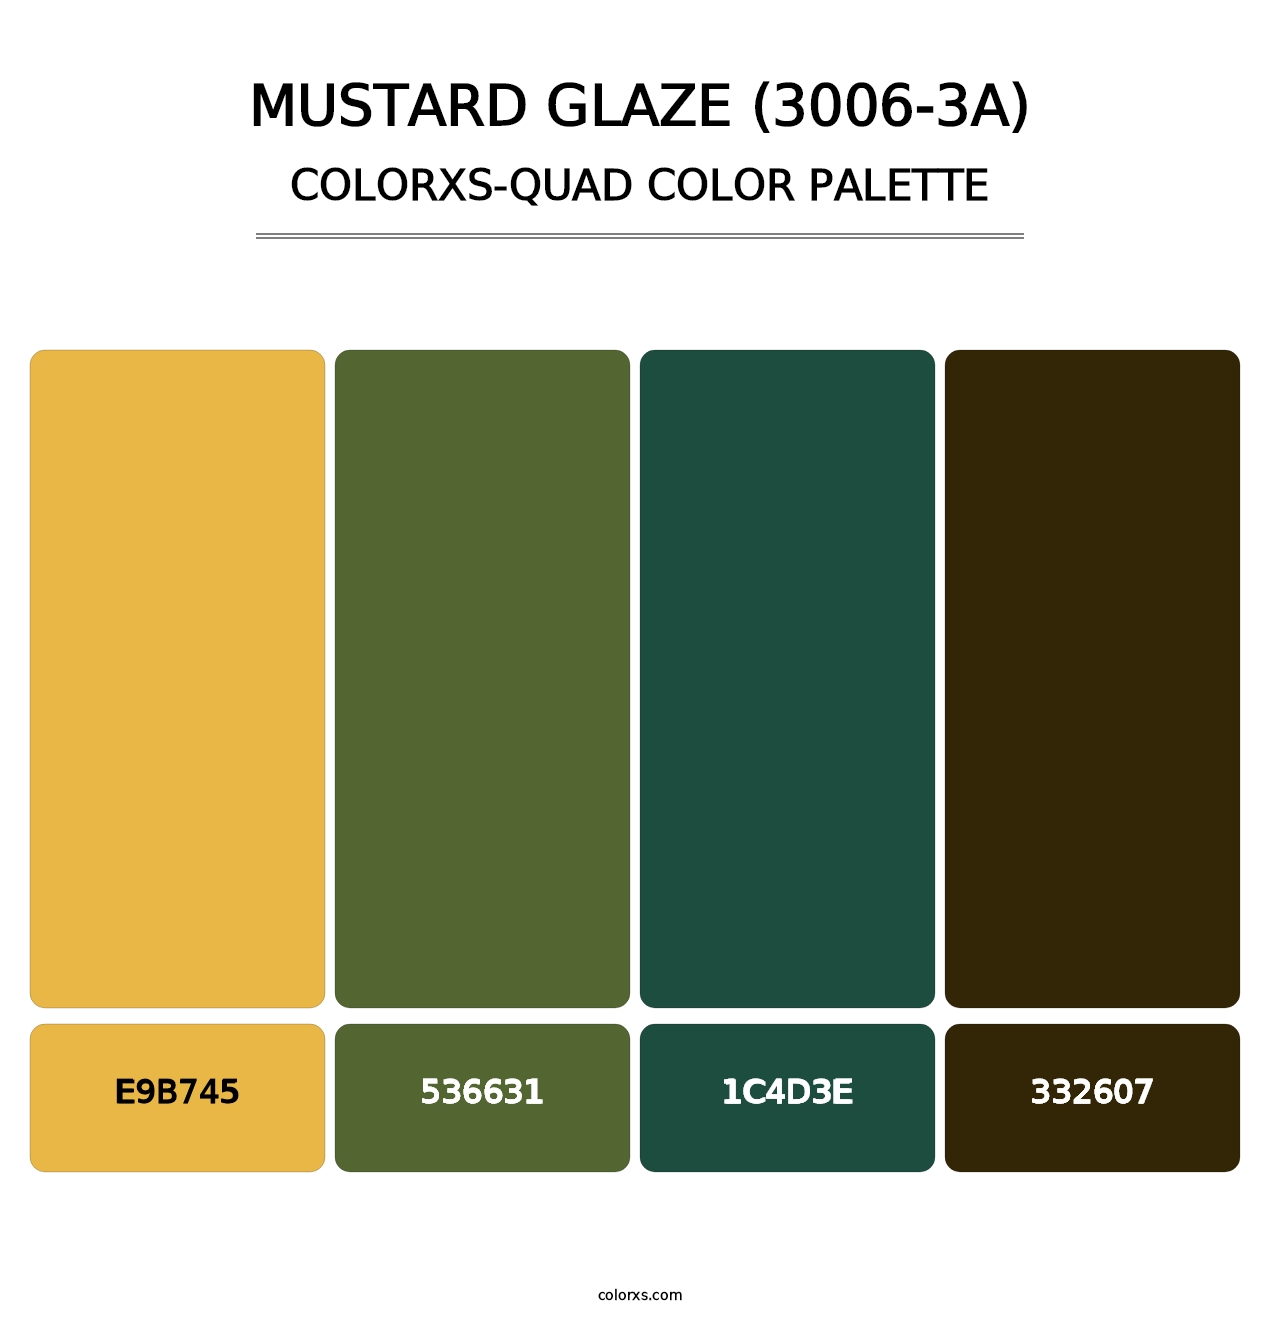 Mustard Glaze (3006-3A) - Colorxs Quad Palette